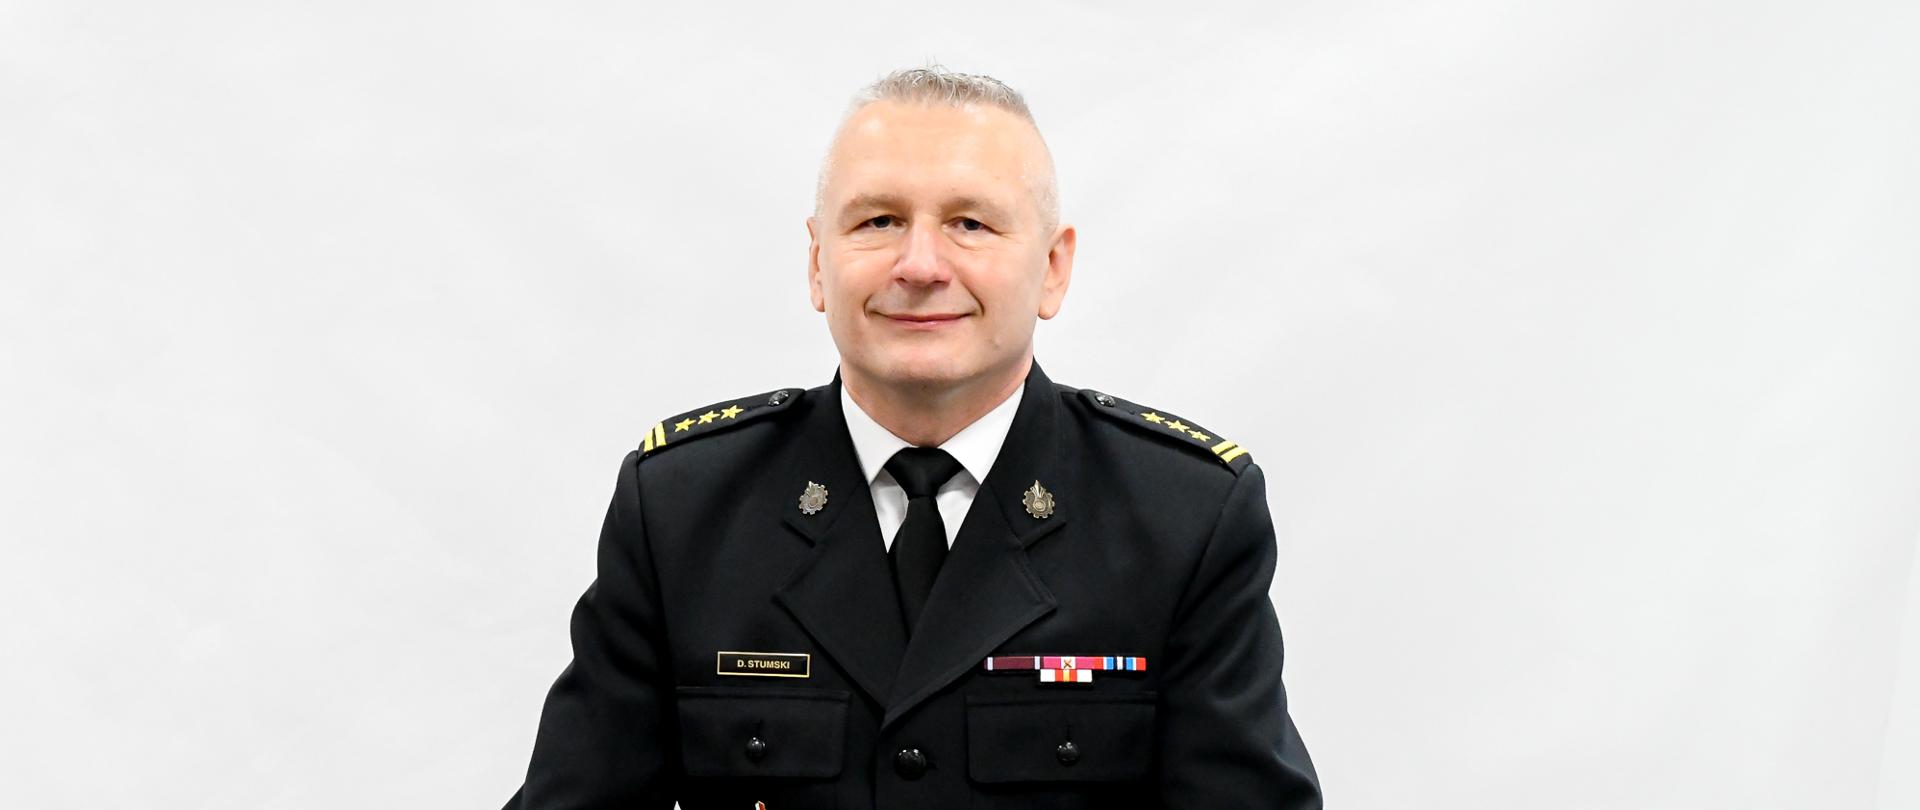 Zastępca mazowieckiego komendanta wojewódzkiego PSP - portret